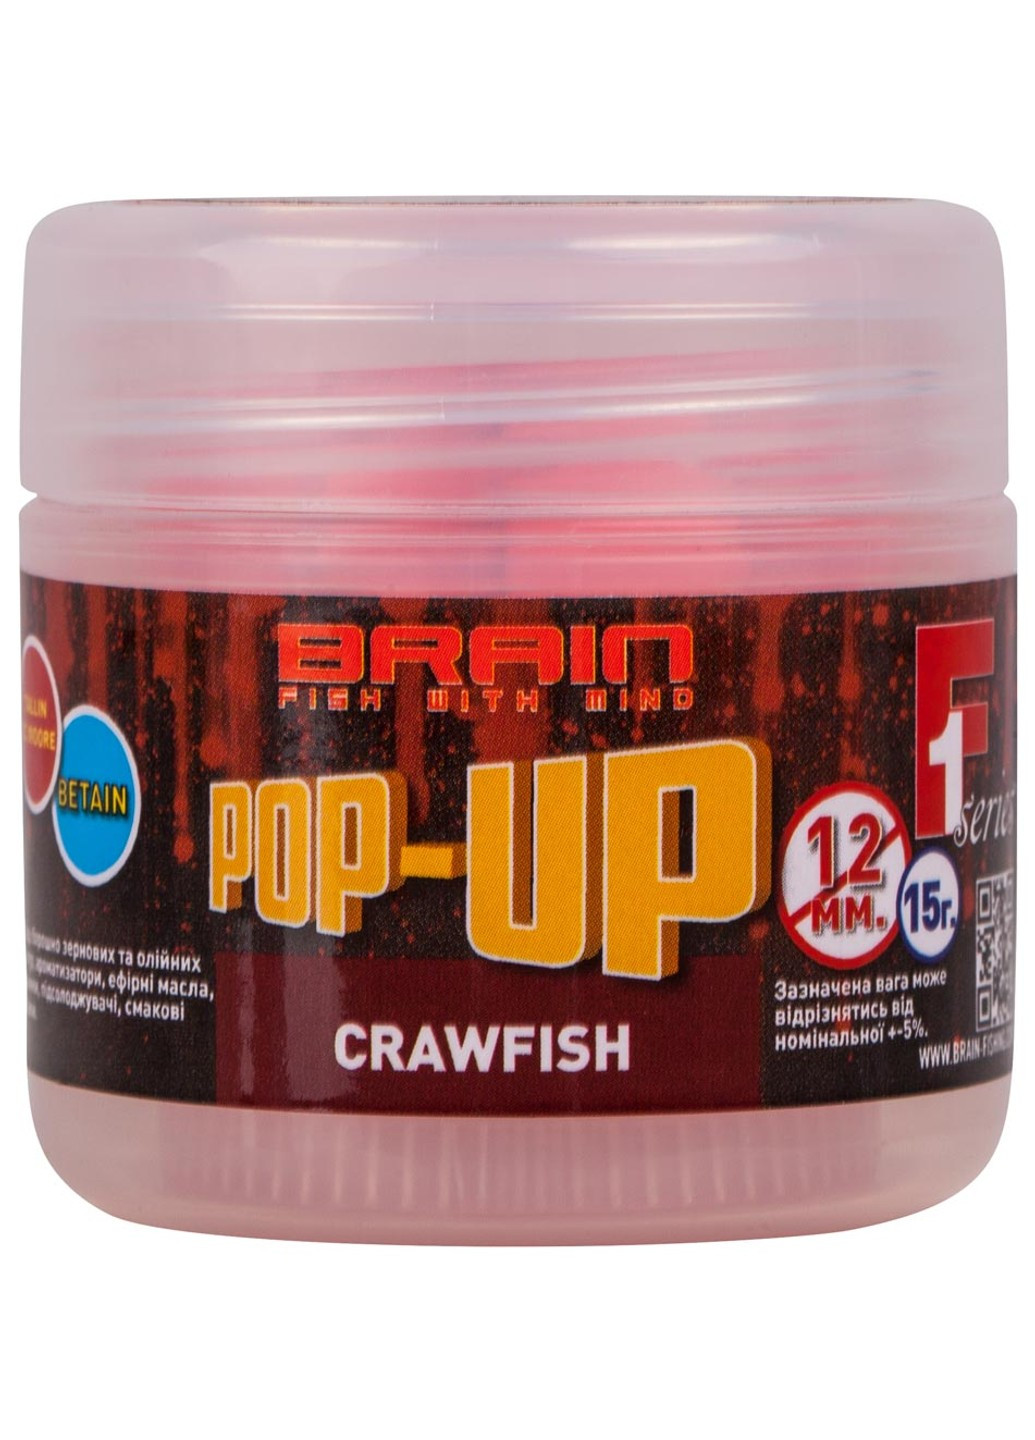 Бойлы Pop-Up F1 Craw Fish (речной рак) 12 mm 15 g (1858-02-56) Brain (252651484)